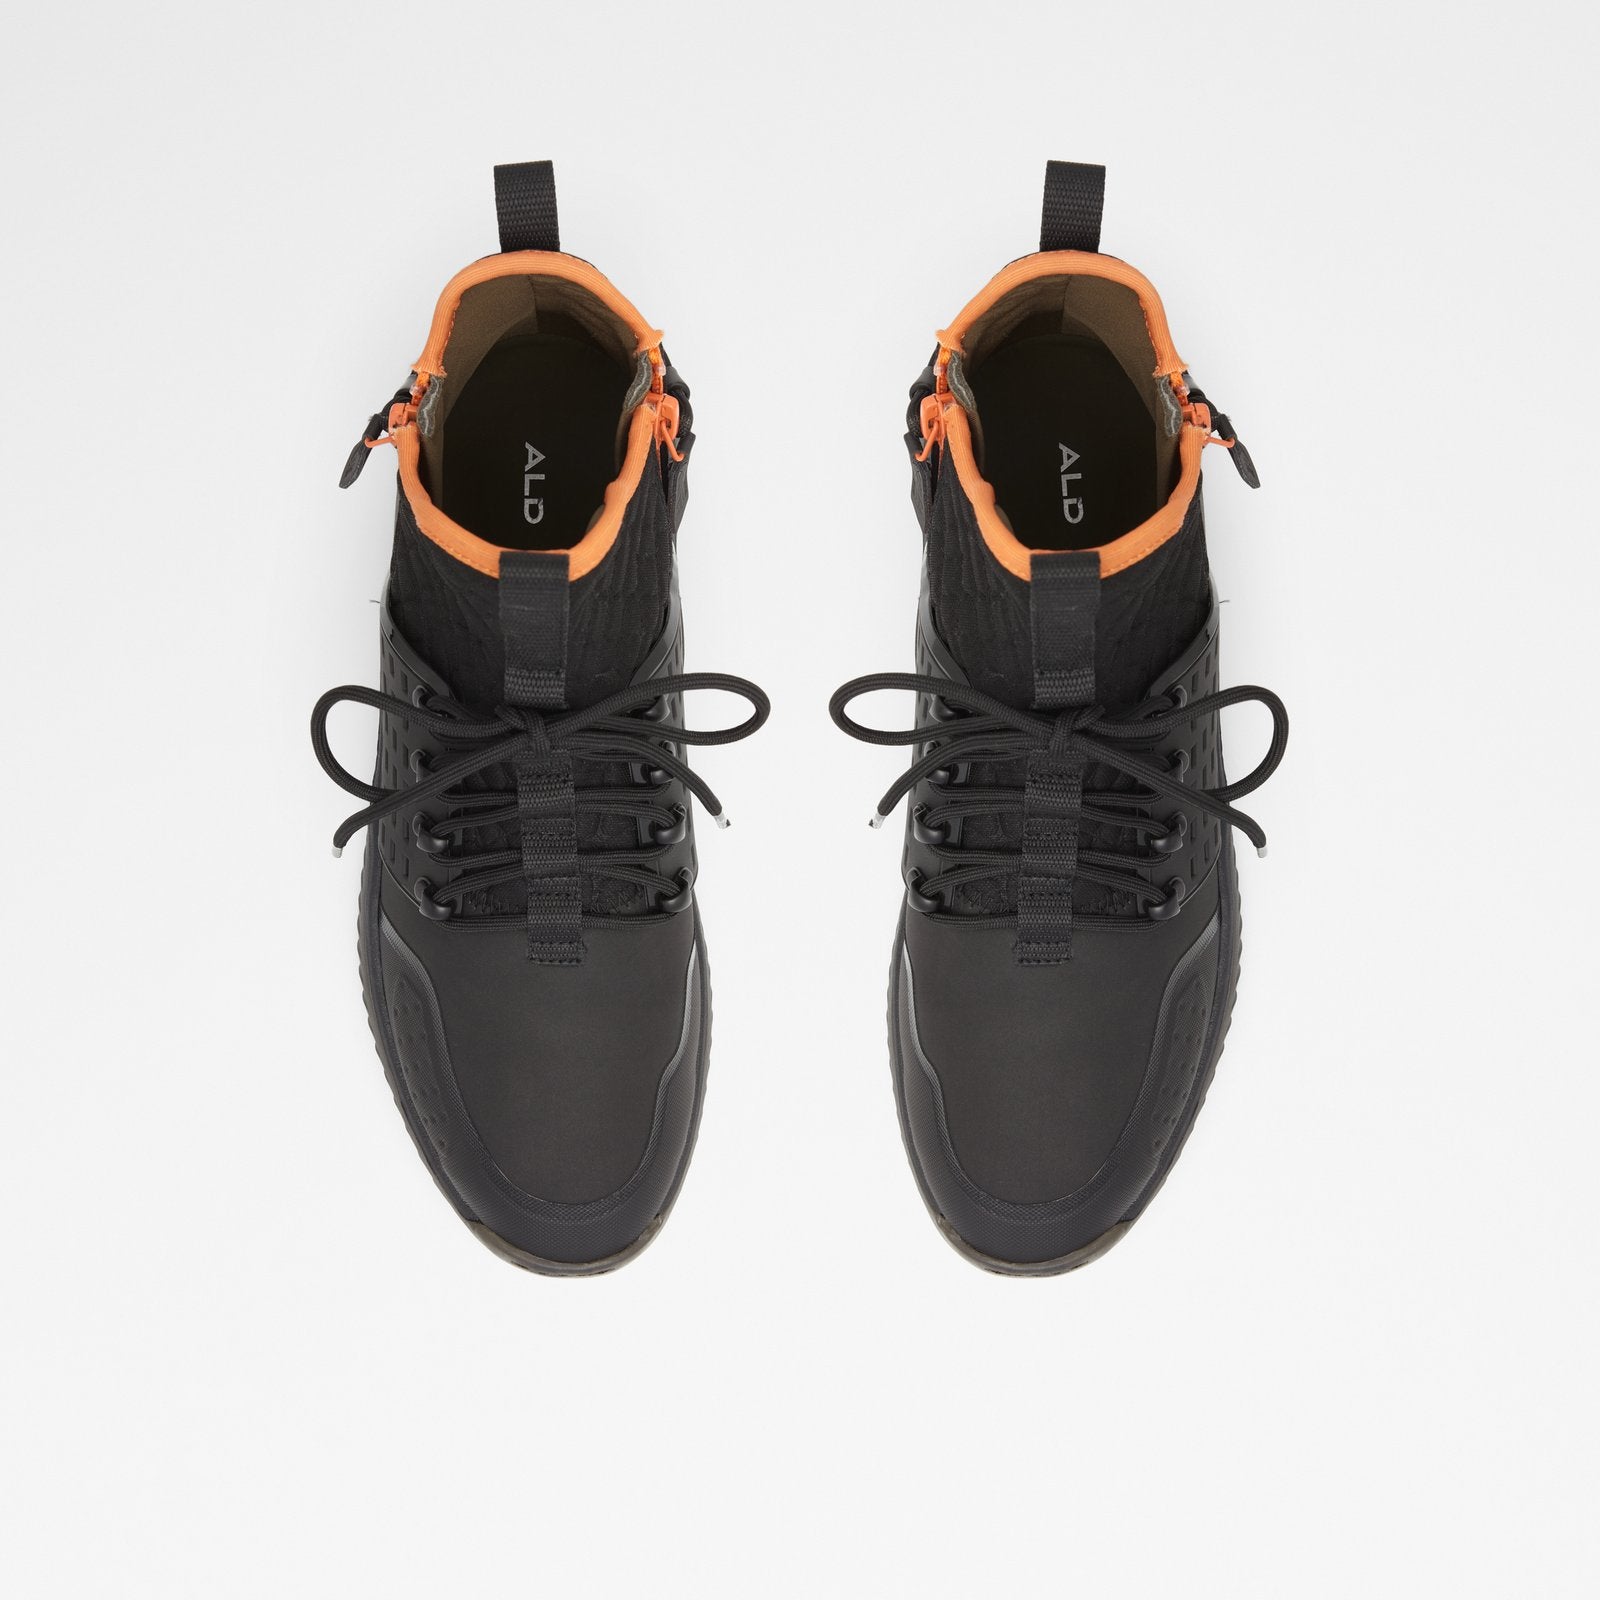 Frealia-wr Men Shoes - Black - ALDO KSA